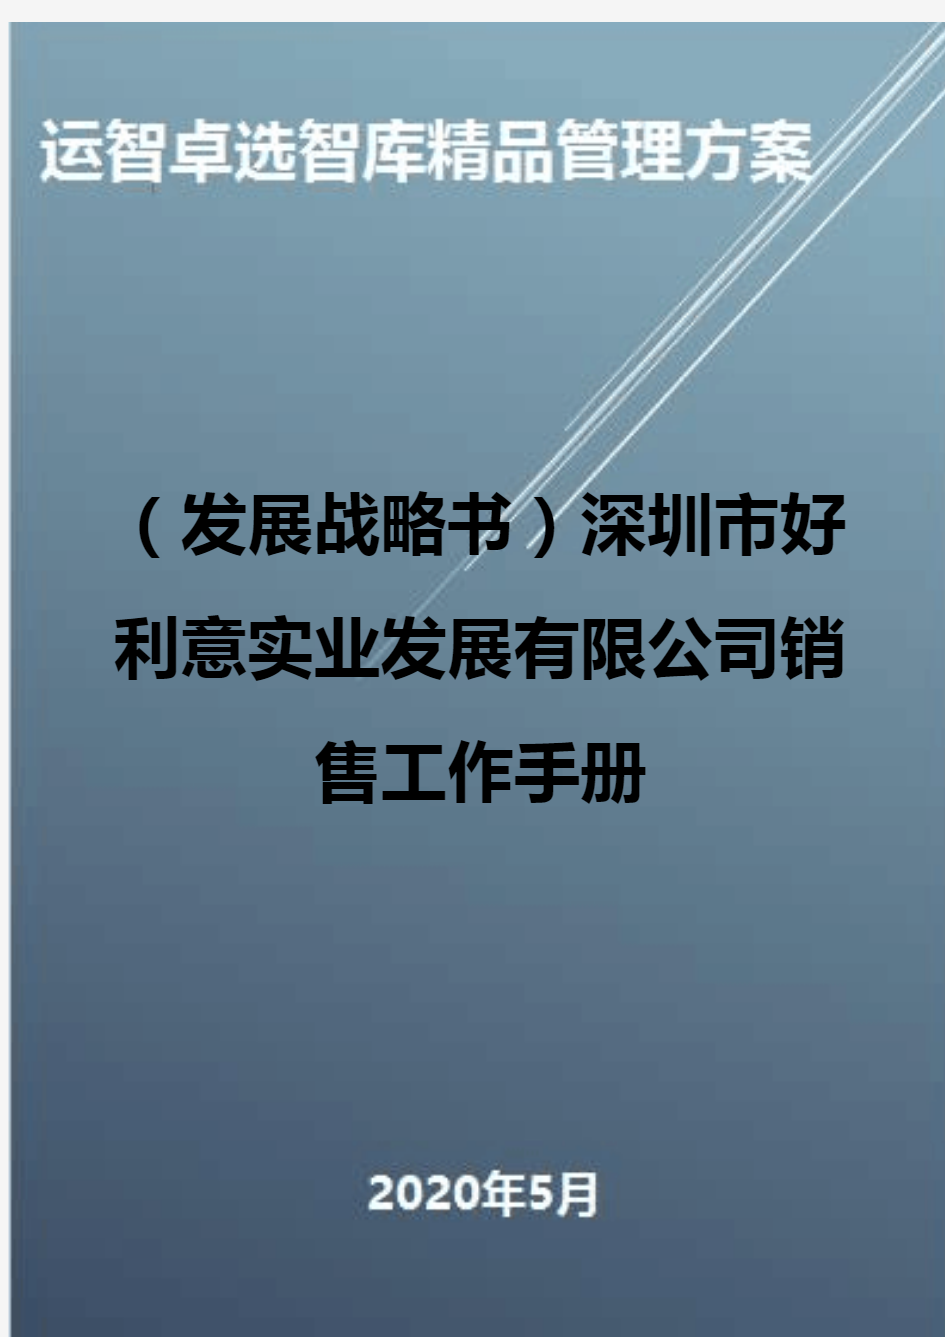 (发展战略书)深圳市好利意实业发展有限公司销售工作手册